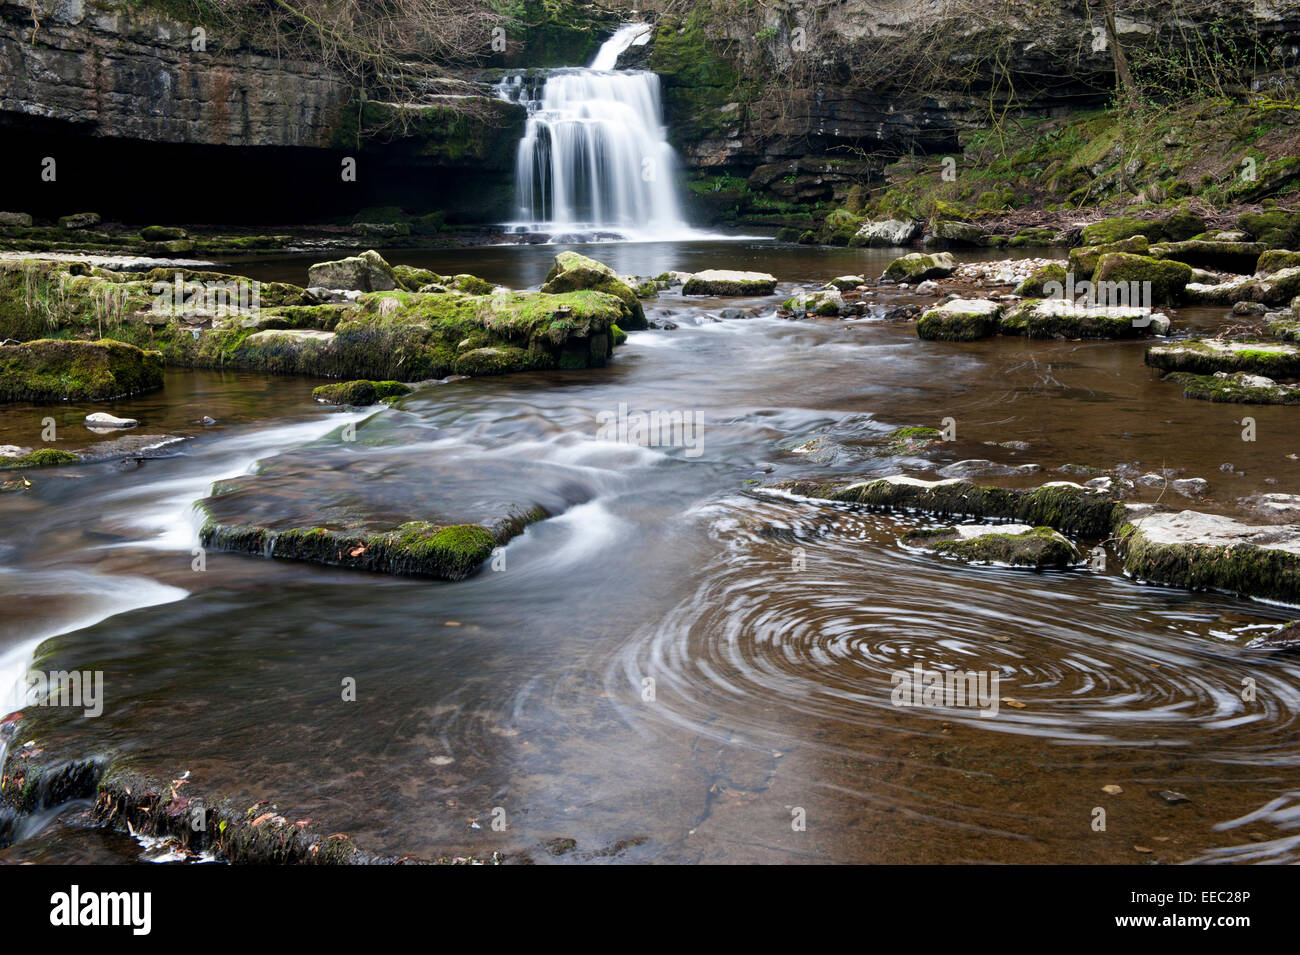 Cauldron Falls at West Burton, Wensleydale, North Yorkshire, UK Stock Photo